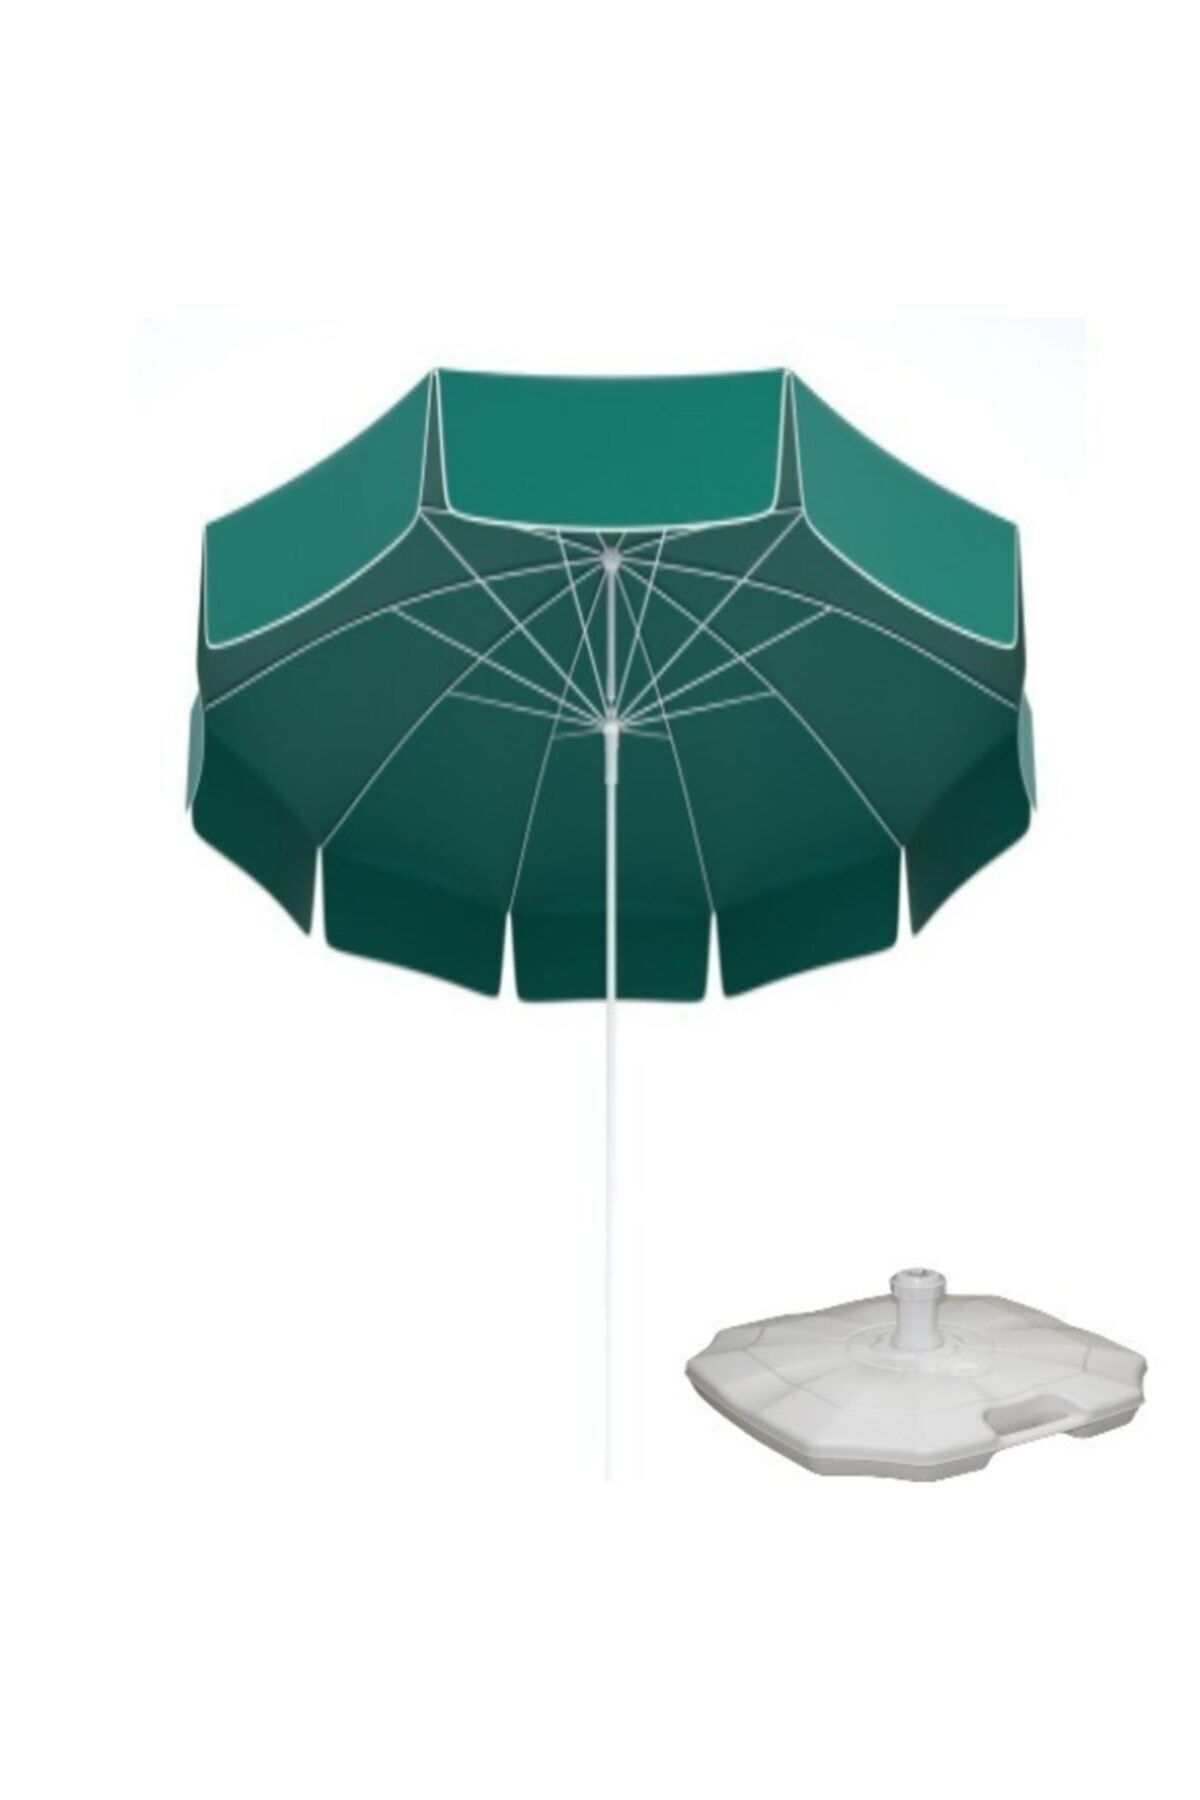 matchbang Yeşil Polyester Plaj Şemsiyesi(BİDONLU)